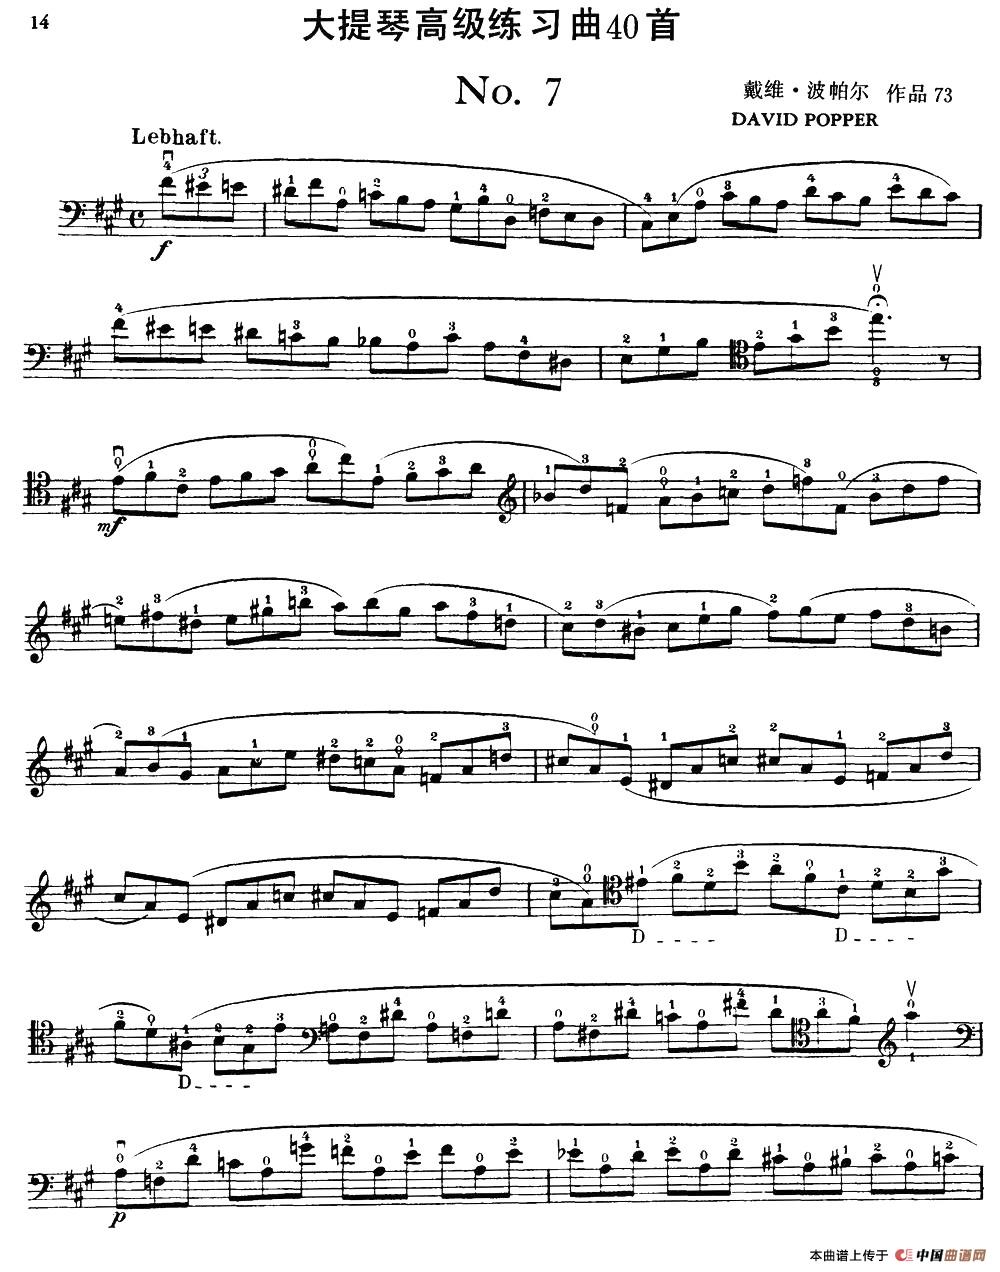 大提琴高级练习曲40首 No.7